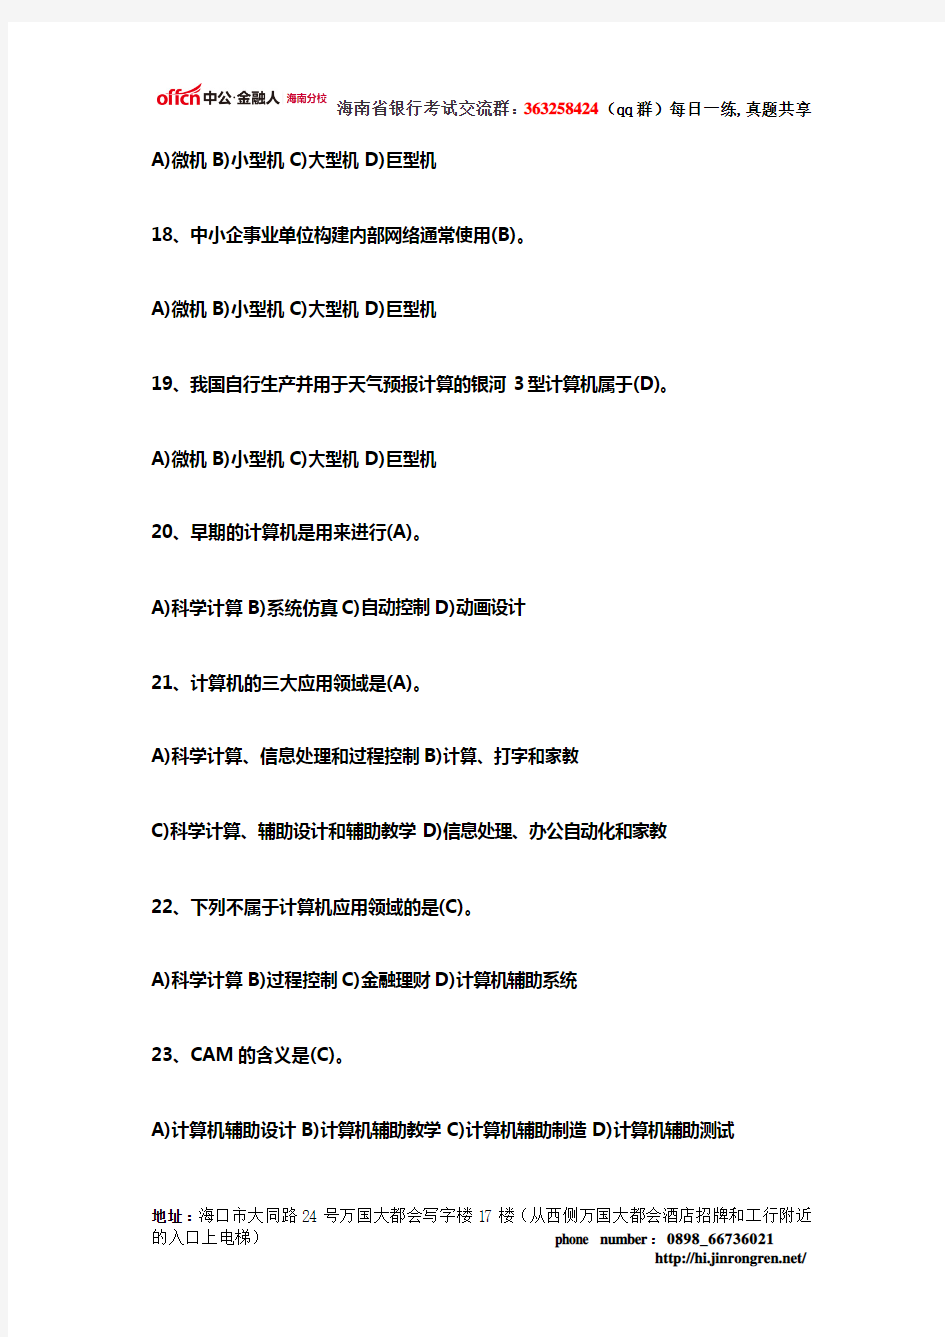 海南农信社招聘考试计算机考题(2)